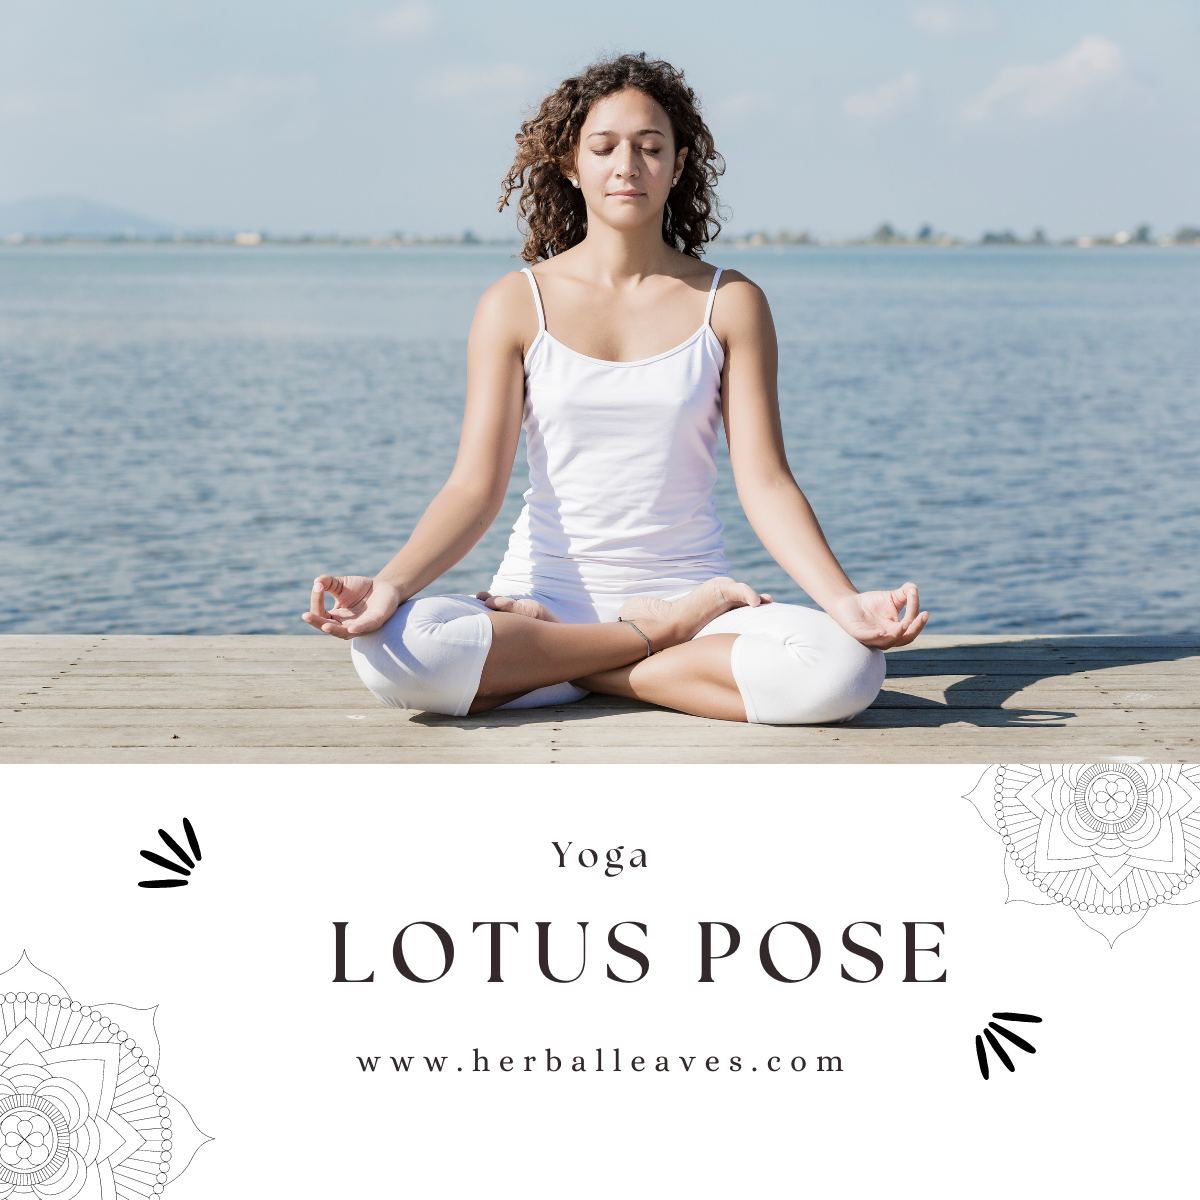 YOGA Lotus pose